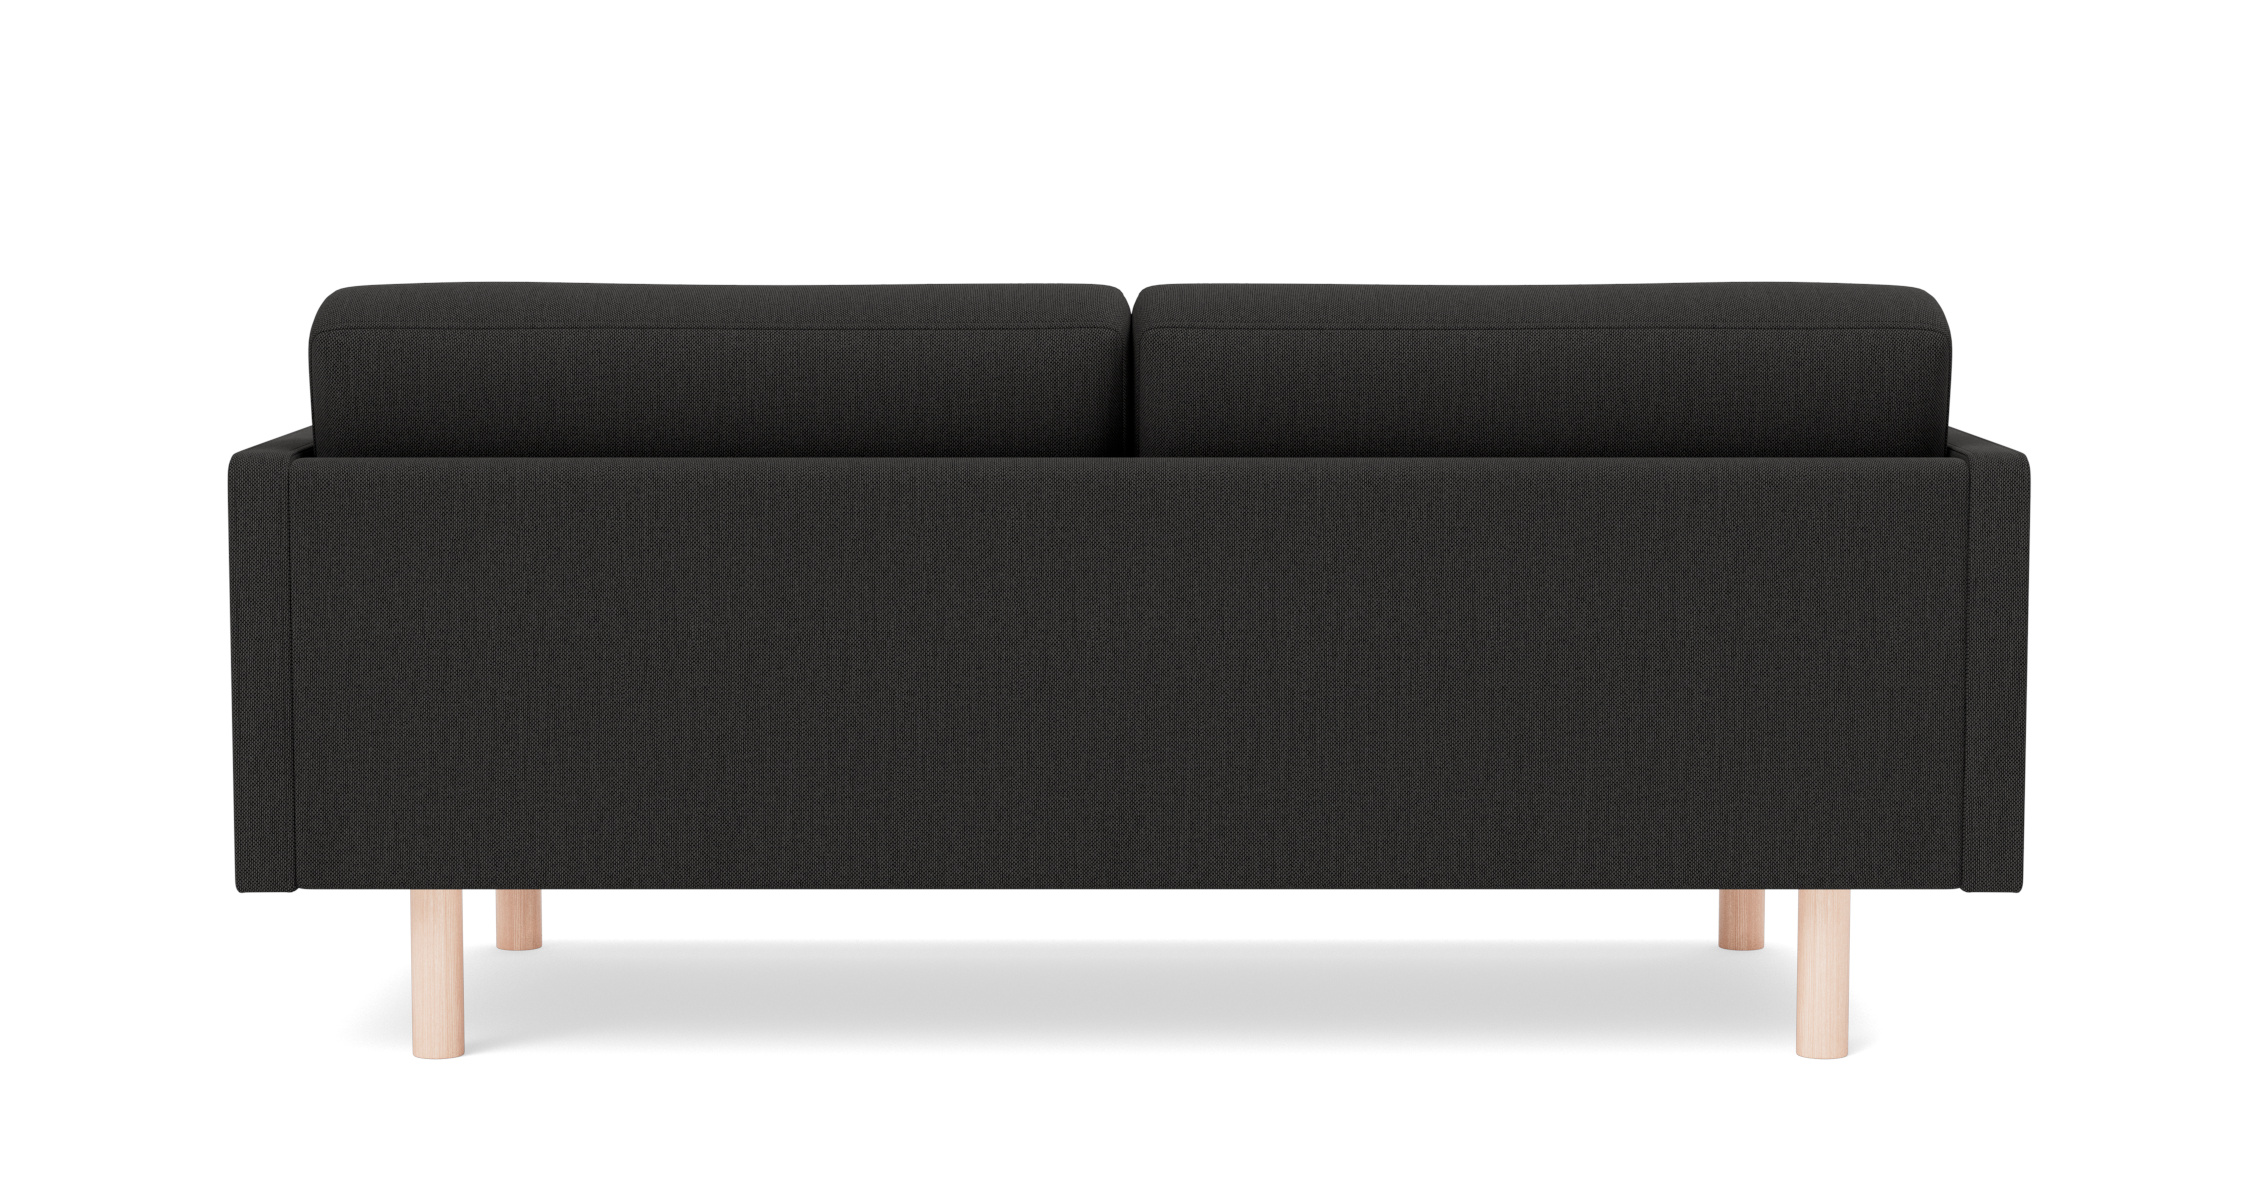 EJ220 Sofa 2-Sitzer, 86 cm, brushed chrom / leder omni 301 schwarz